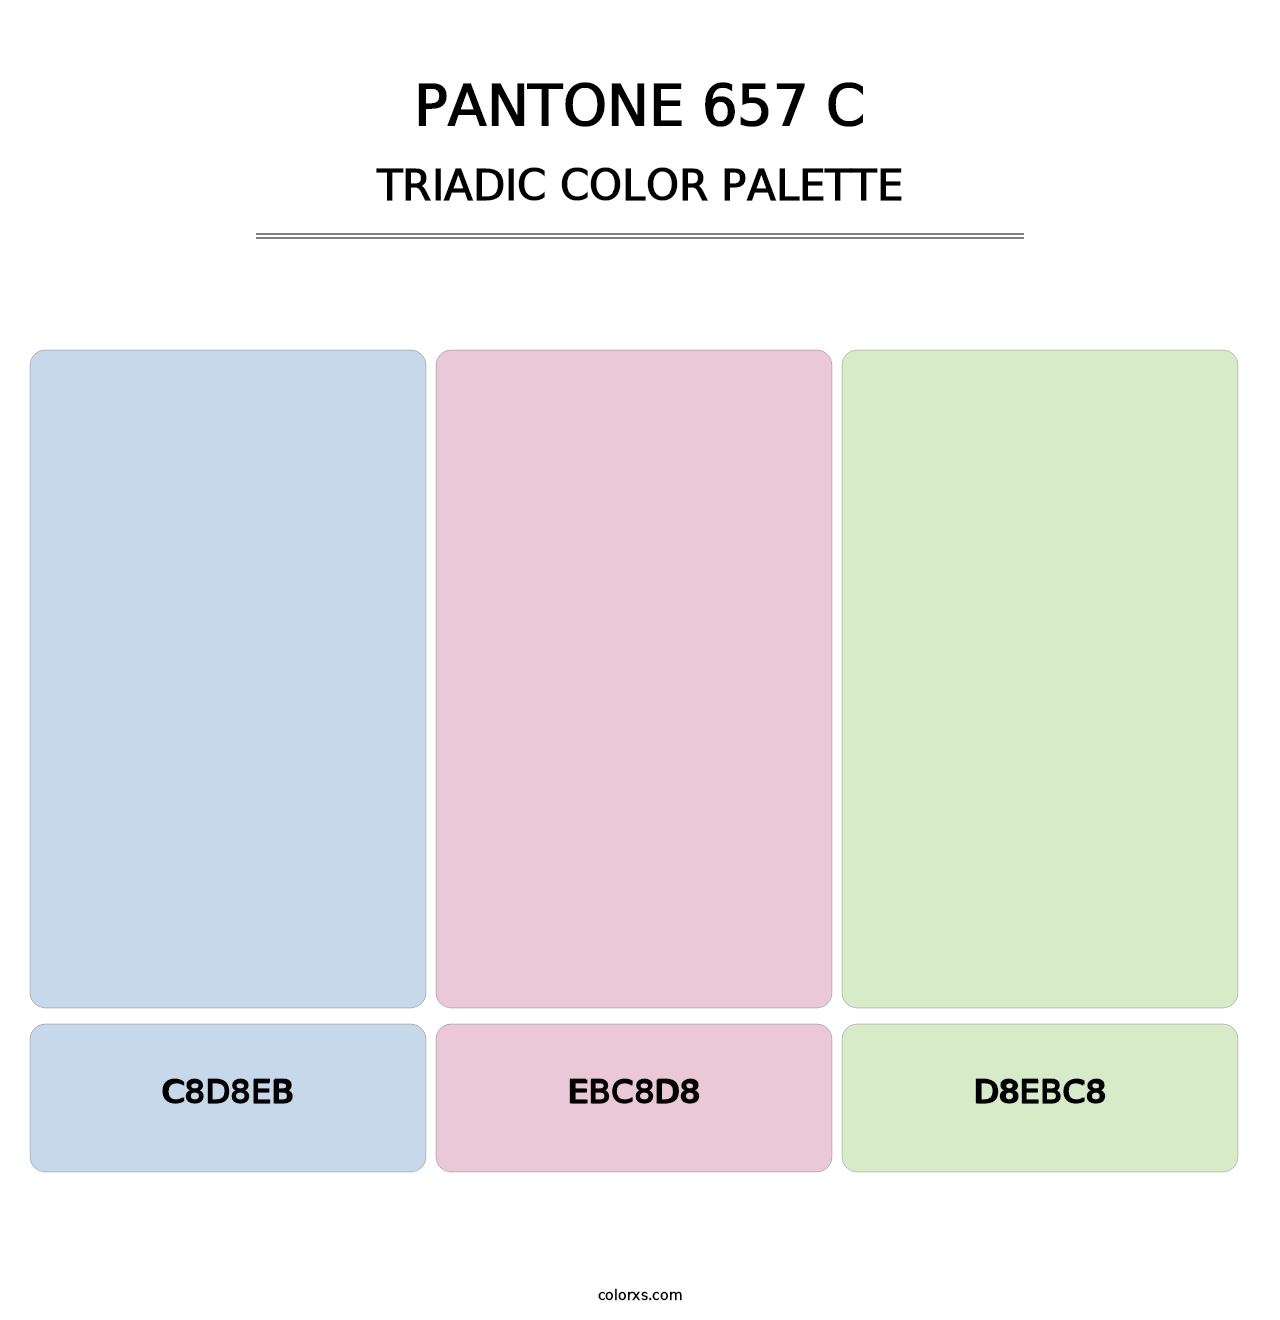 PANTONE 657 C - Triadic Color Palette